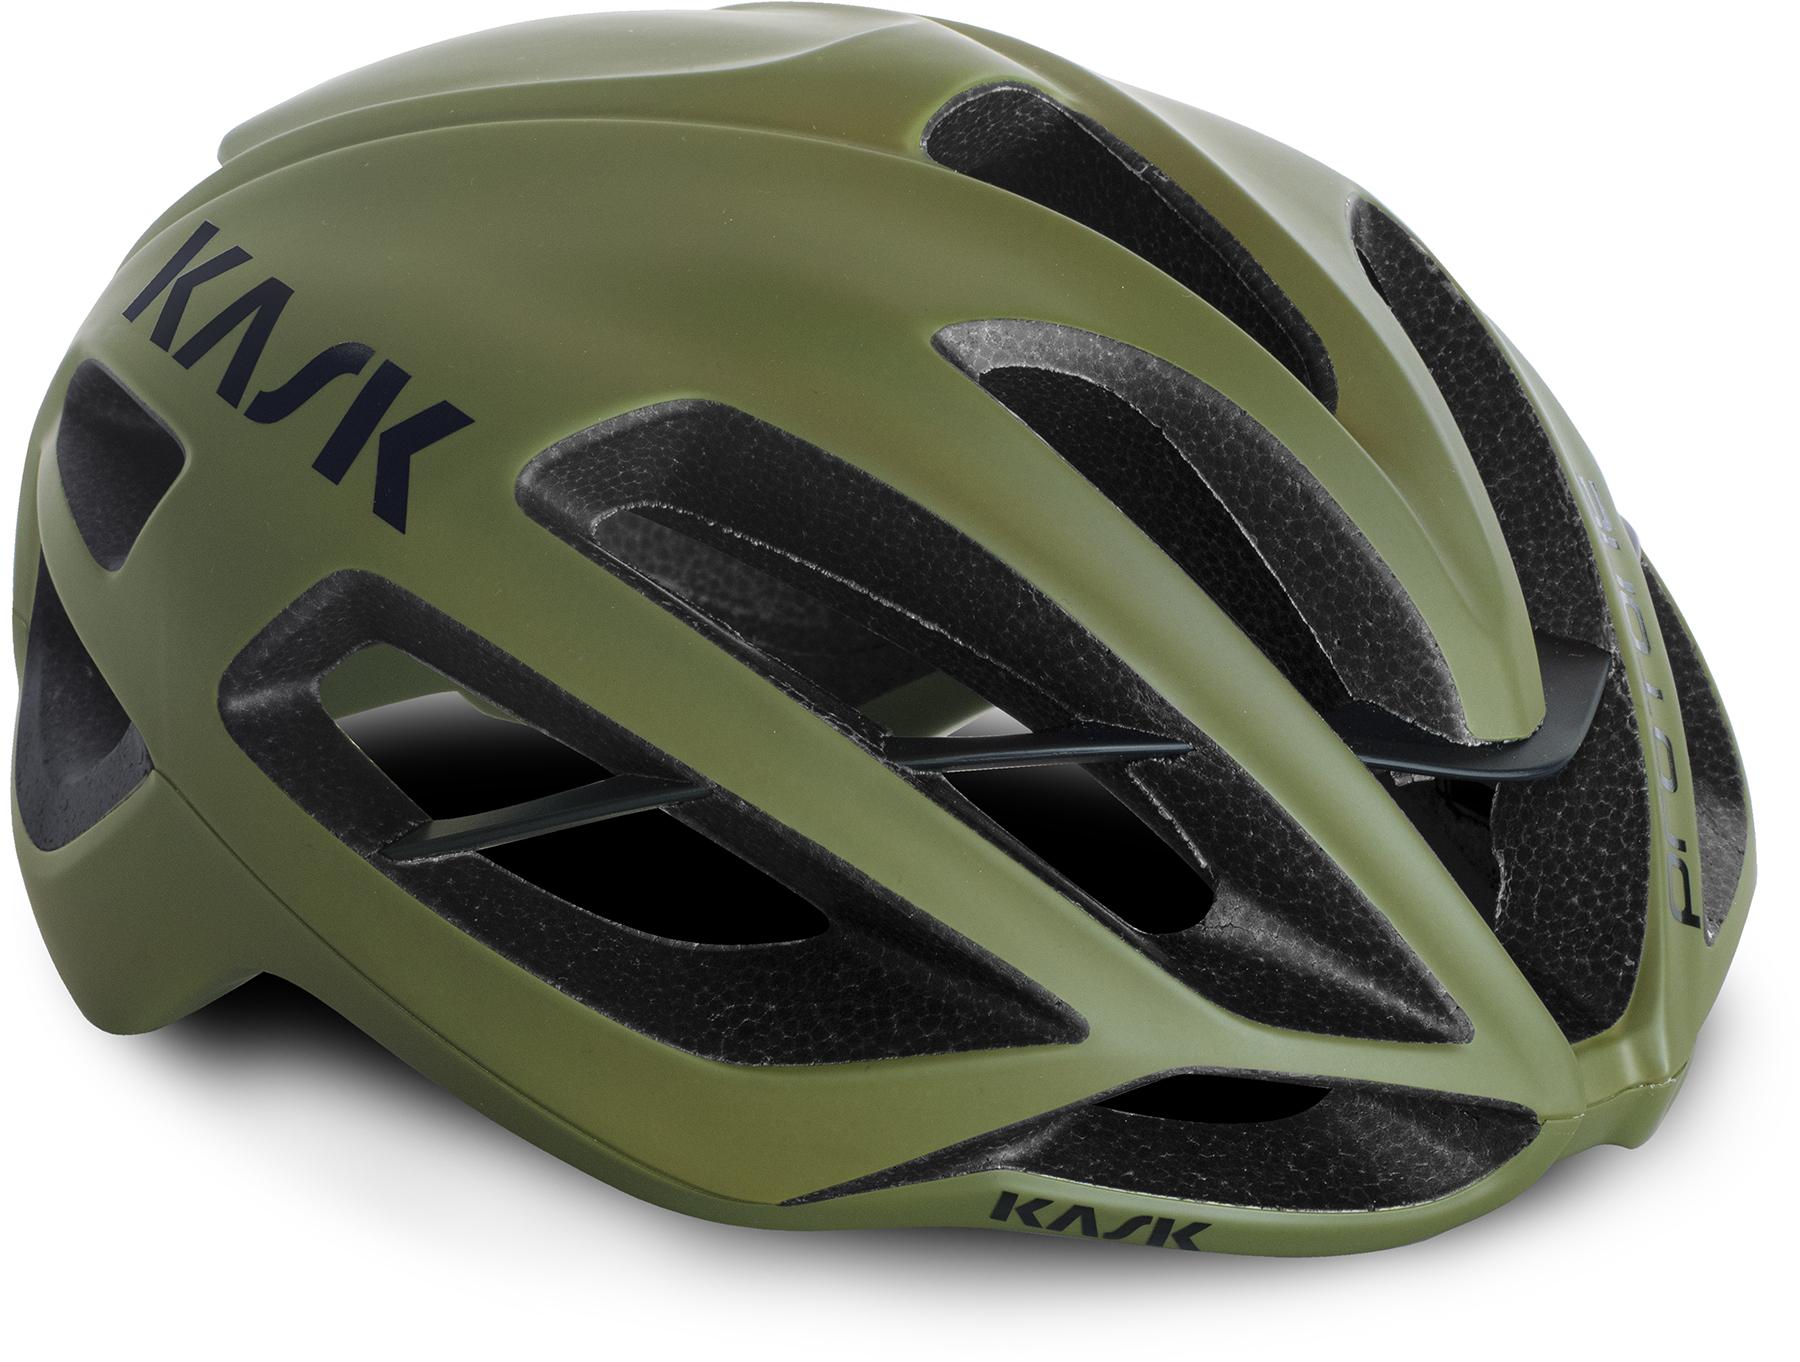 Kask Protone Matte Road Helmet (wg11)  Olive Green Matte